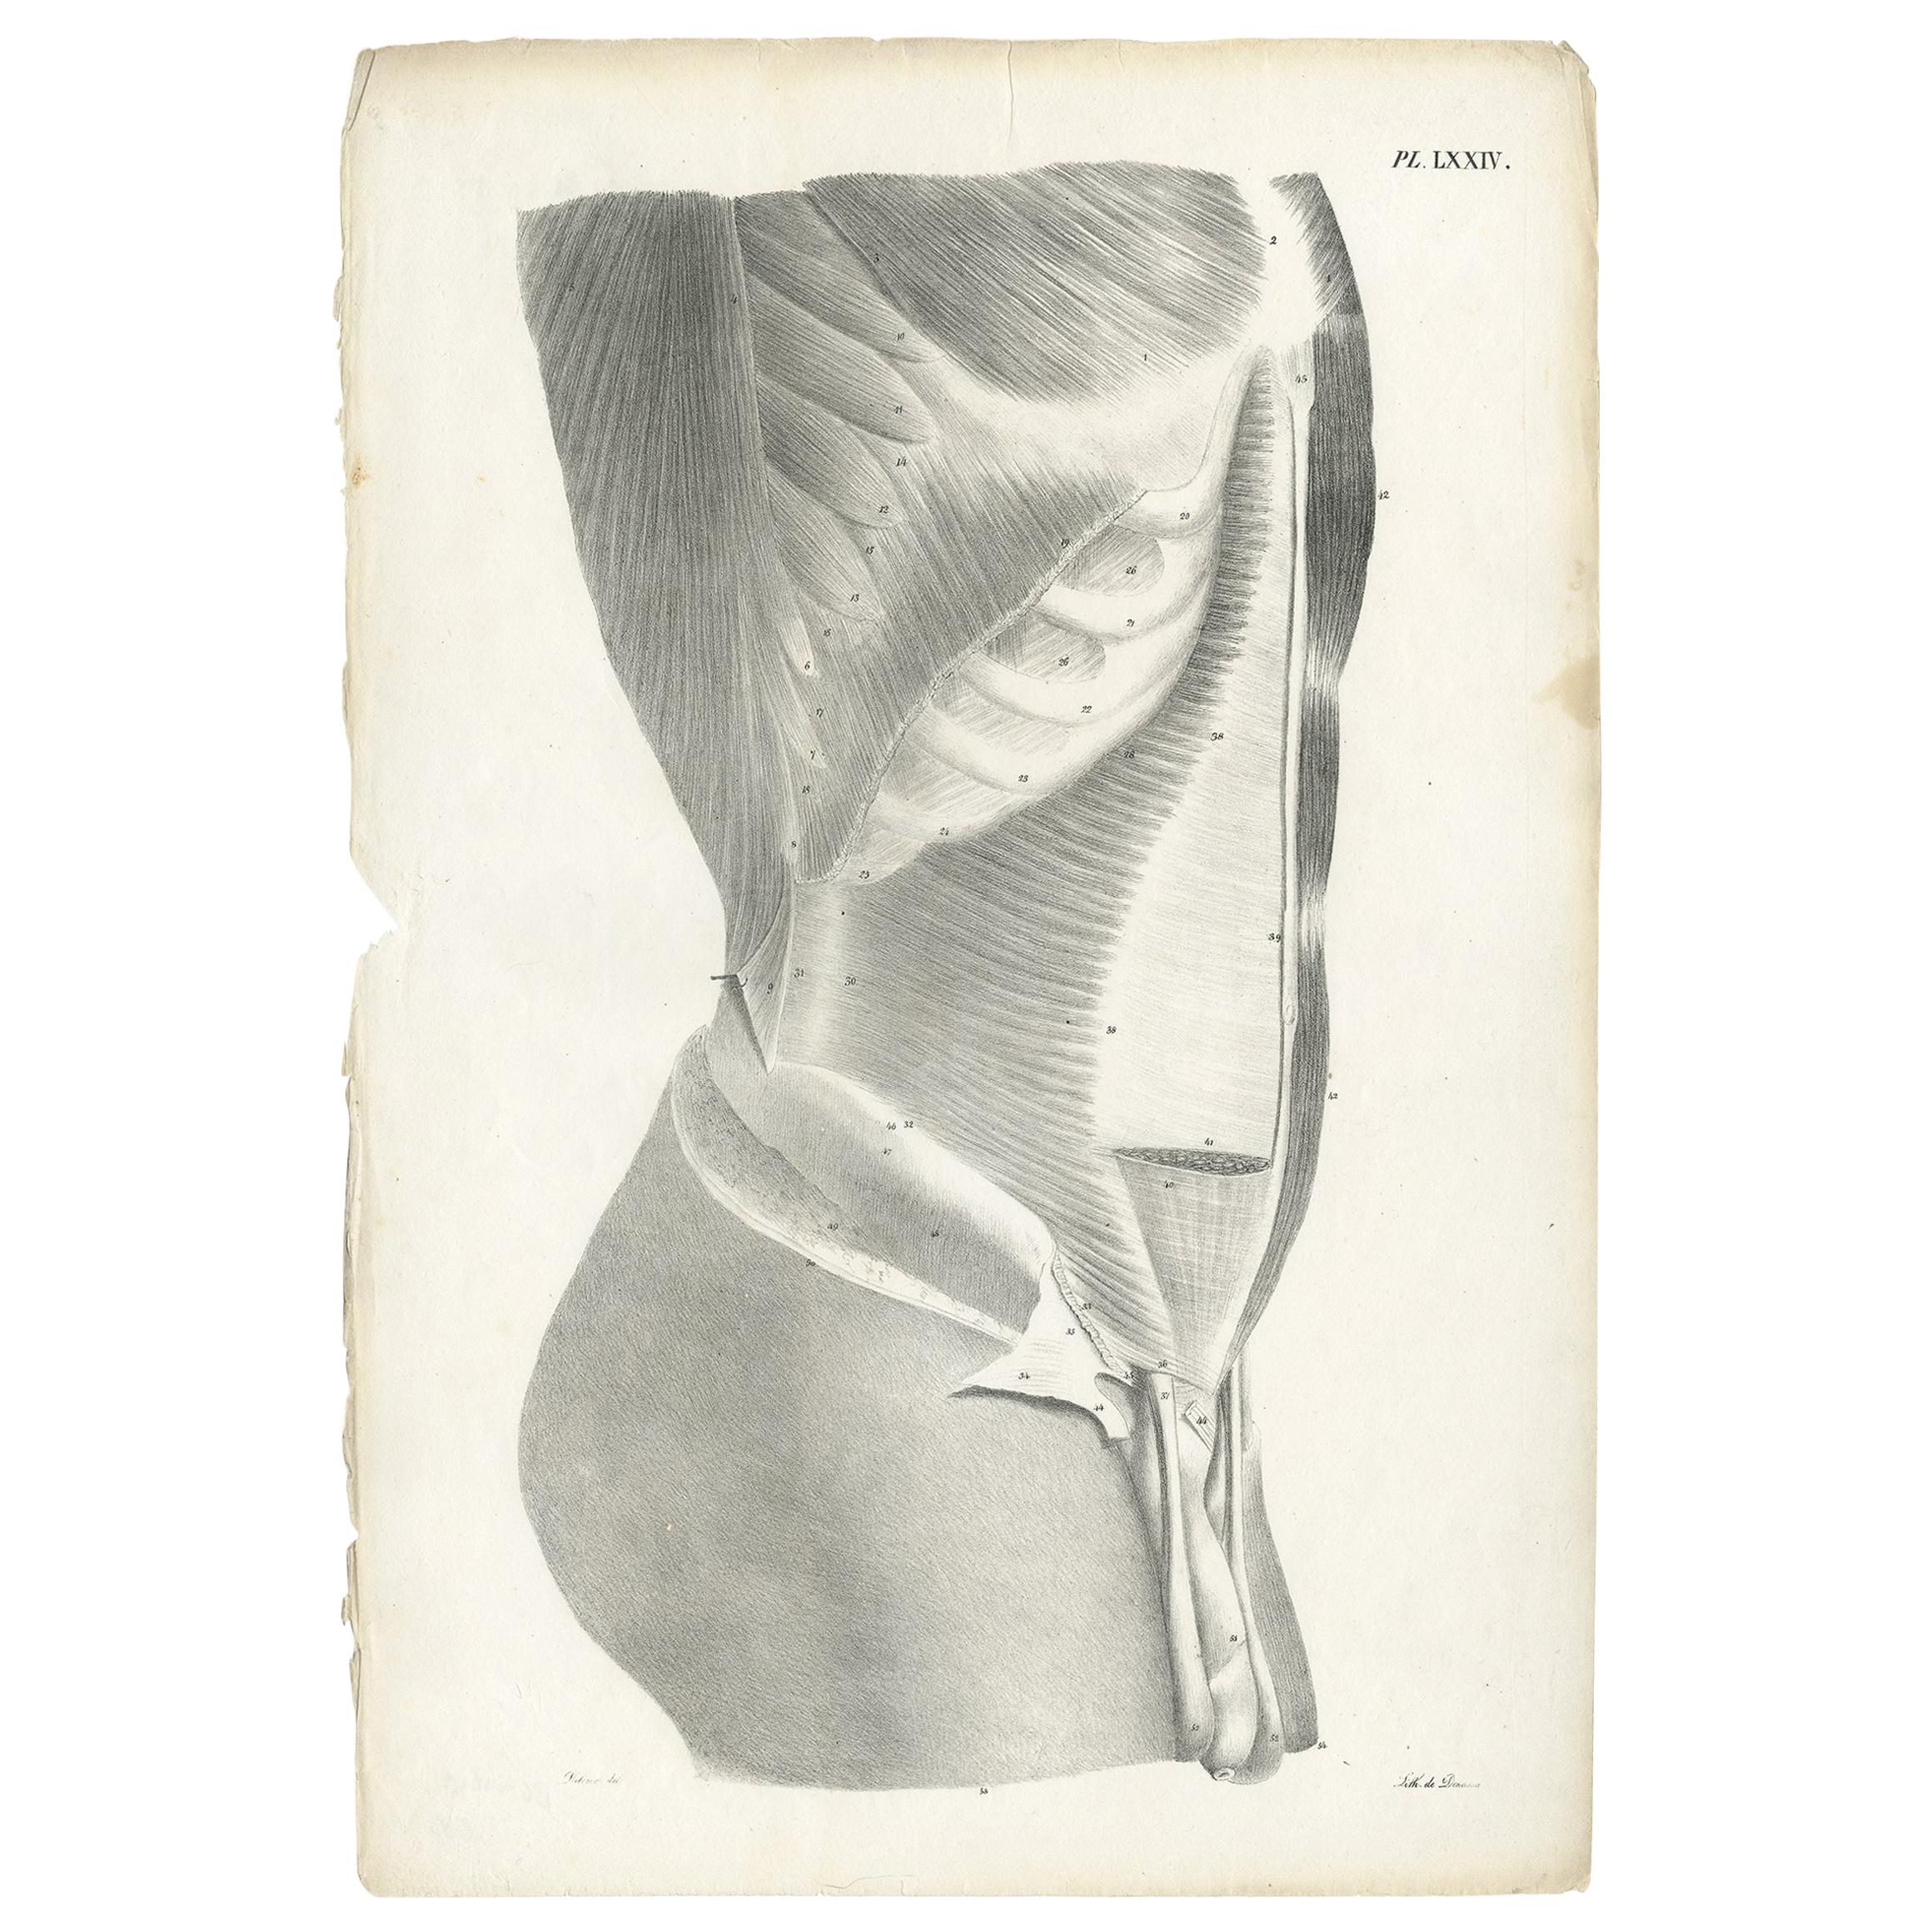 Pl. LXXIV Antiker Anatomie-/Medizindruck des männlichen Torso von Cloquet, '1821'